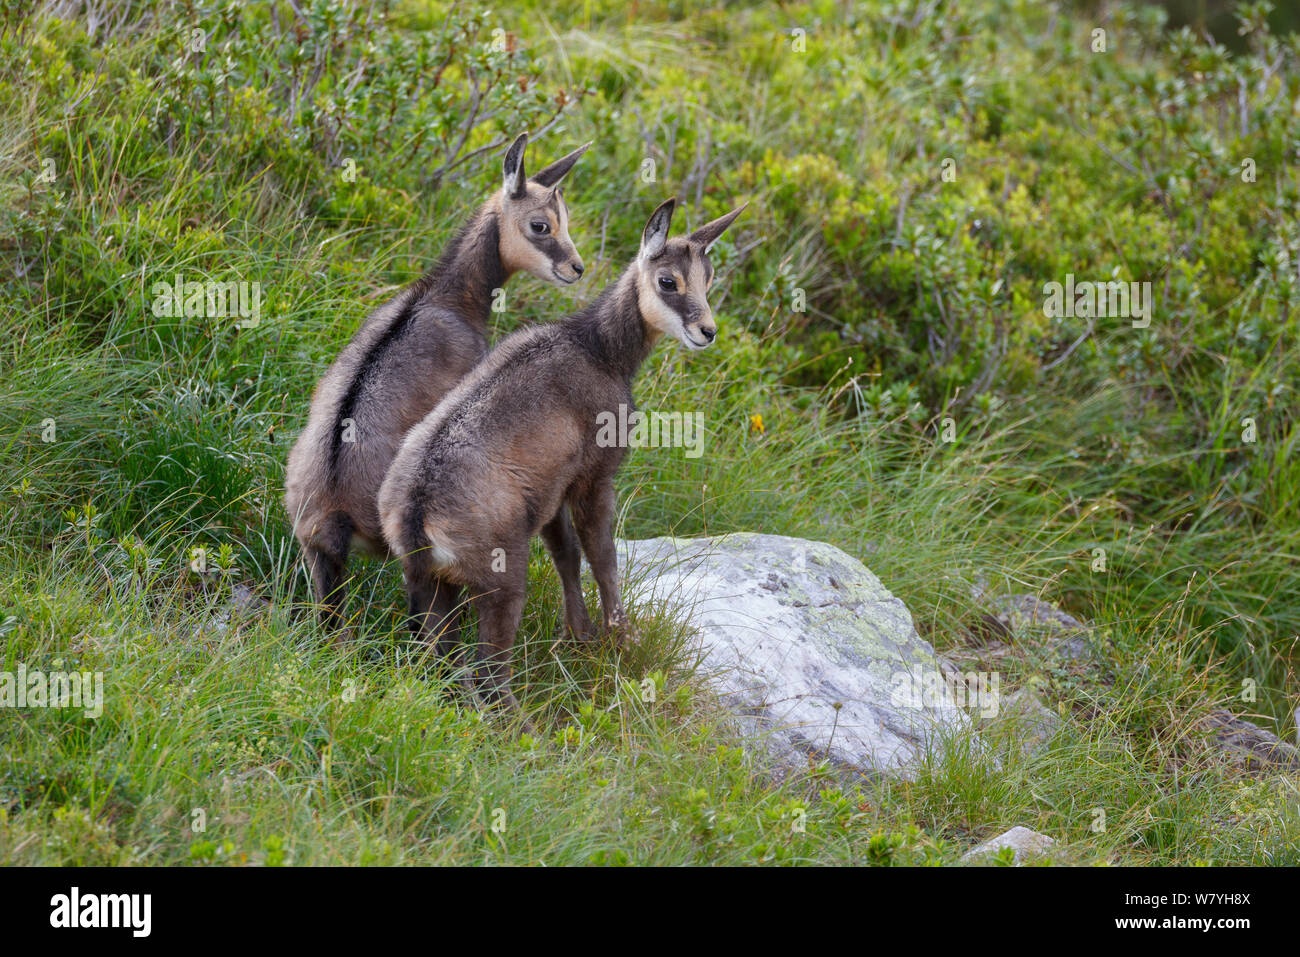 Zwei Kinder GEMSE (RUPICAPRA rupicapra) zusammen. Berner Alpen, Schweiz. August. Stockfoto